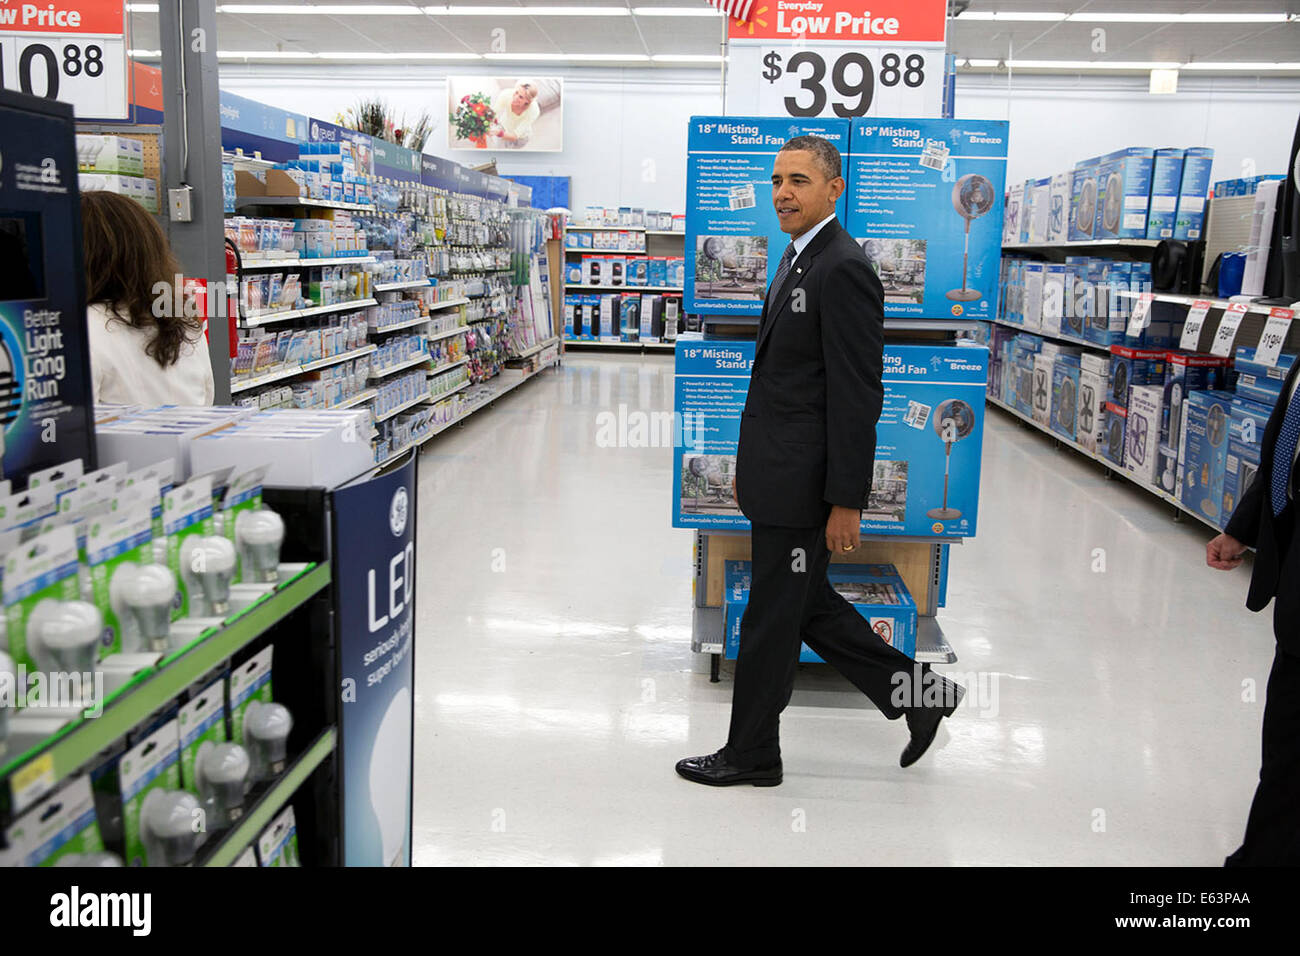 Le président Barack Obama se promène dans les allées au Walmart avant son discours sur l'efficacité énergétique à Mountain View, Californie, le 9 mai 2014. Banque D'Images